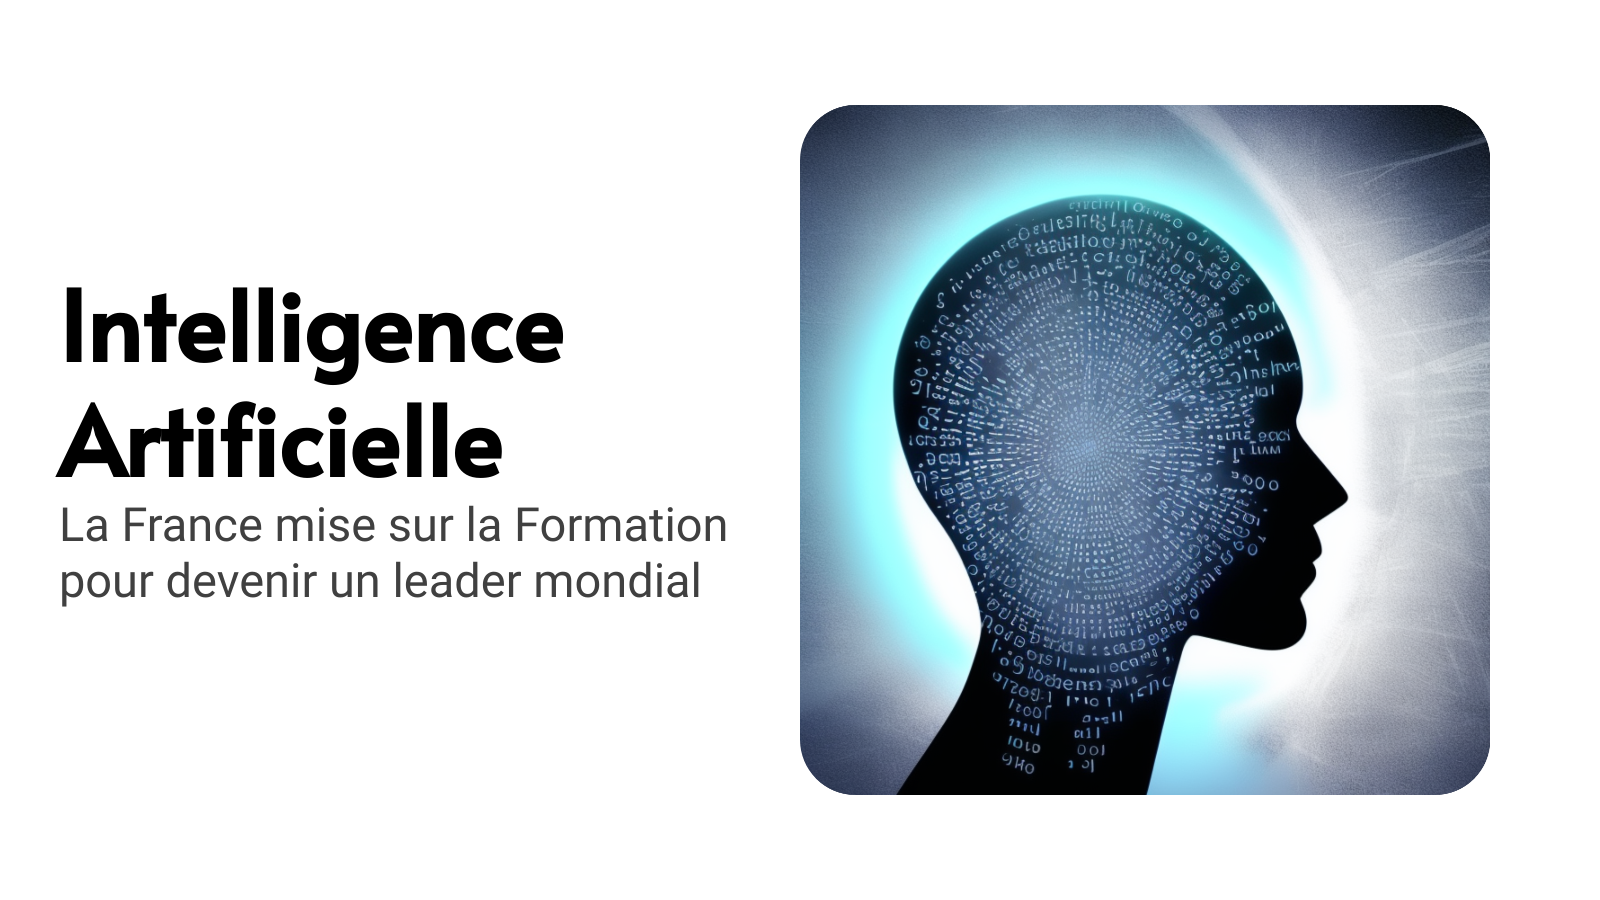 Intelligence Artificielle et Formation : La France lance une stratégie innovante pour créer les talents de demain